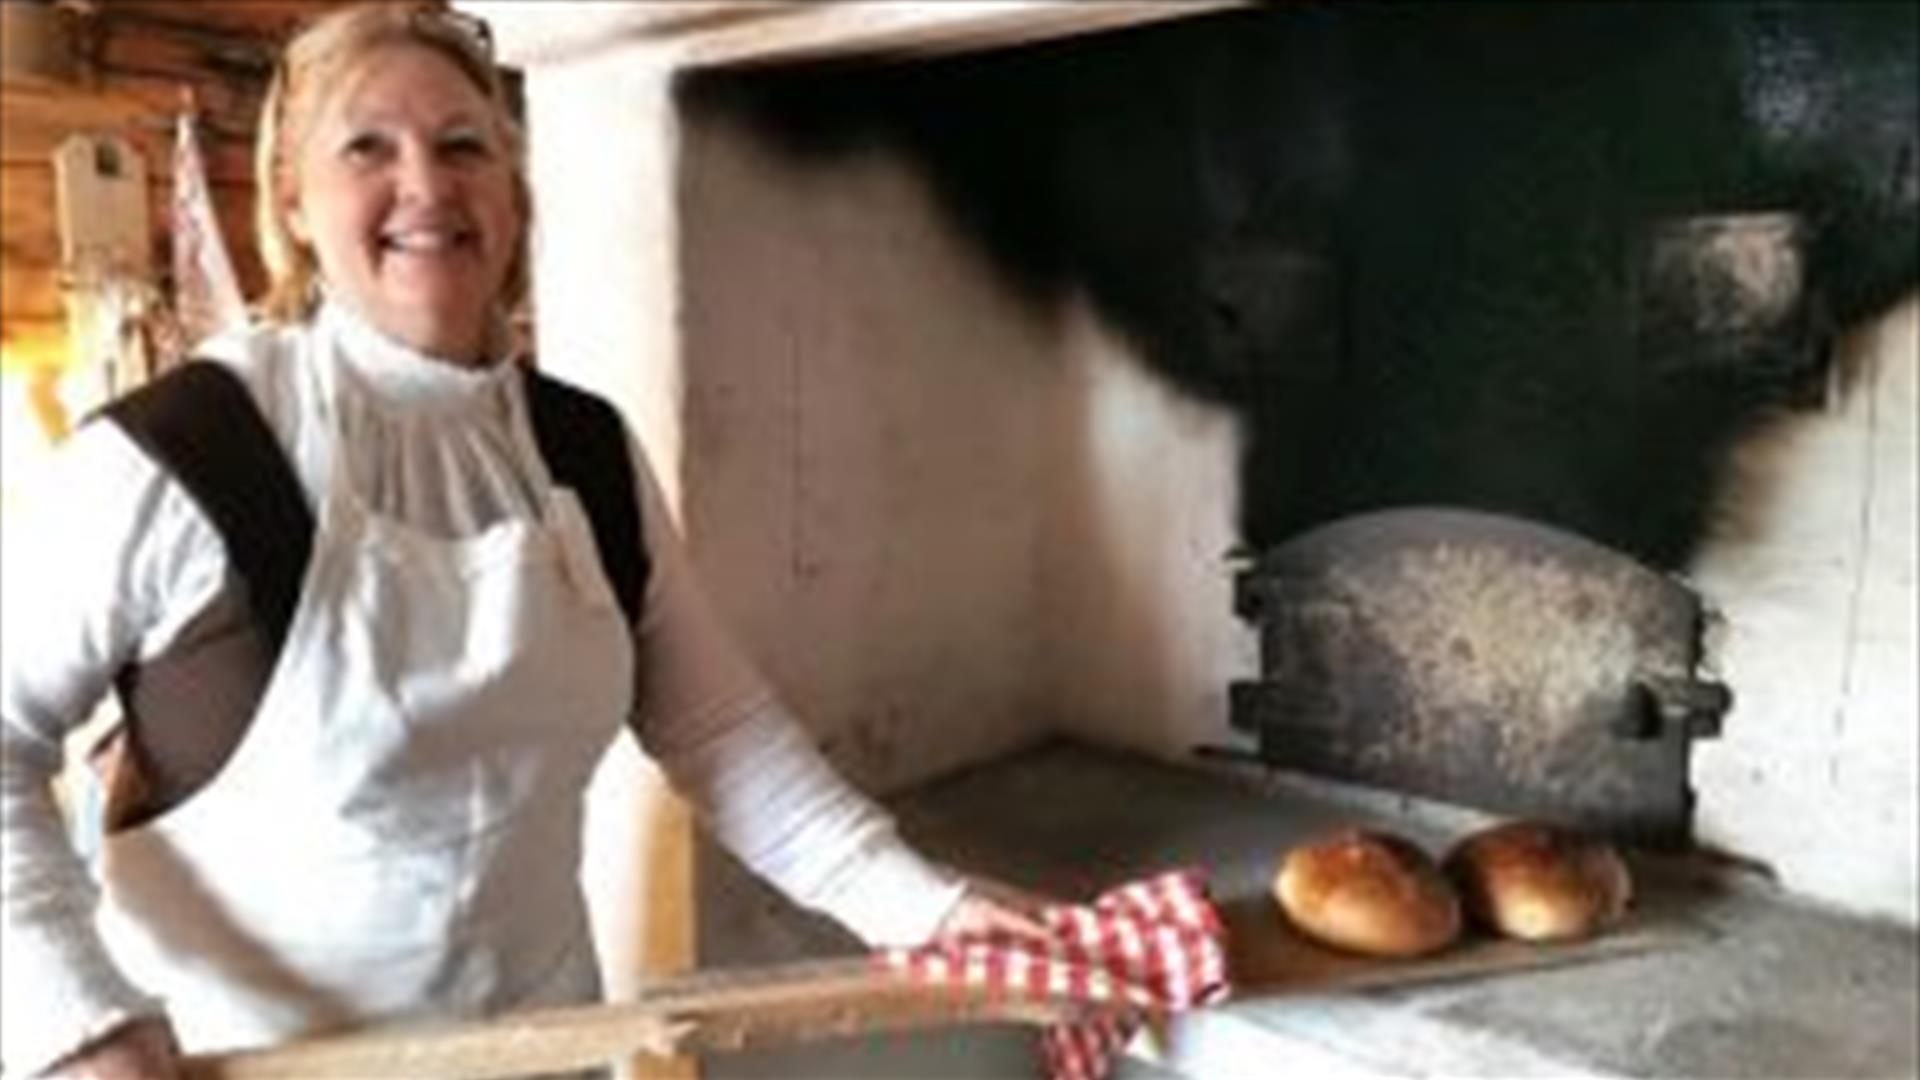 Kjersti Horgen baker i den gamle bakerovnen. Foto: Anne Gallefos Wollertsen